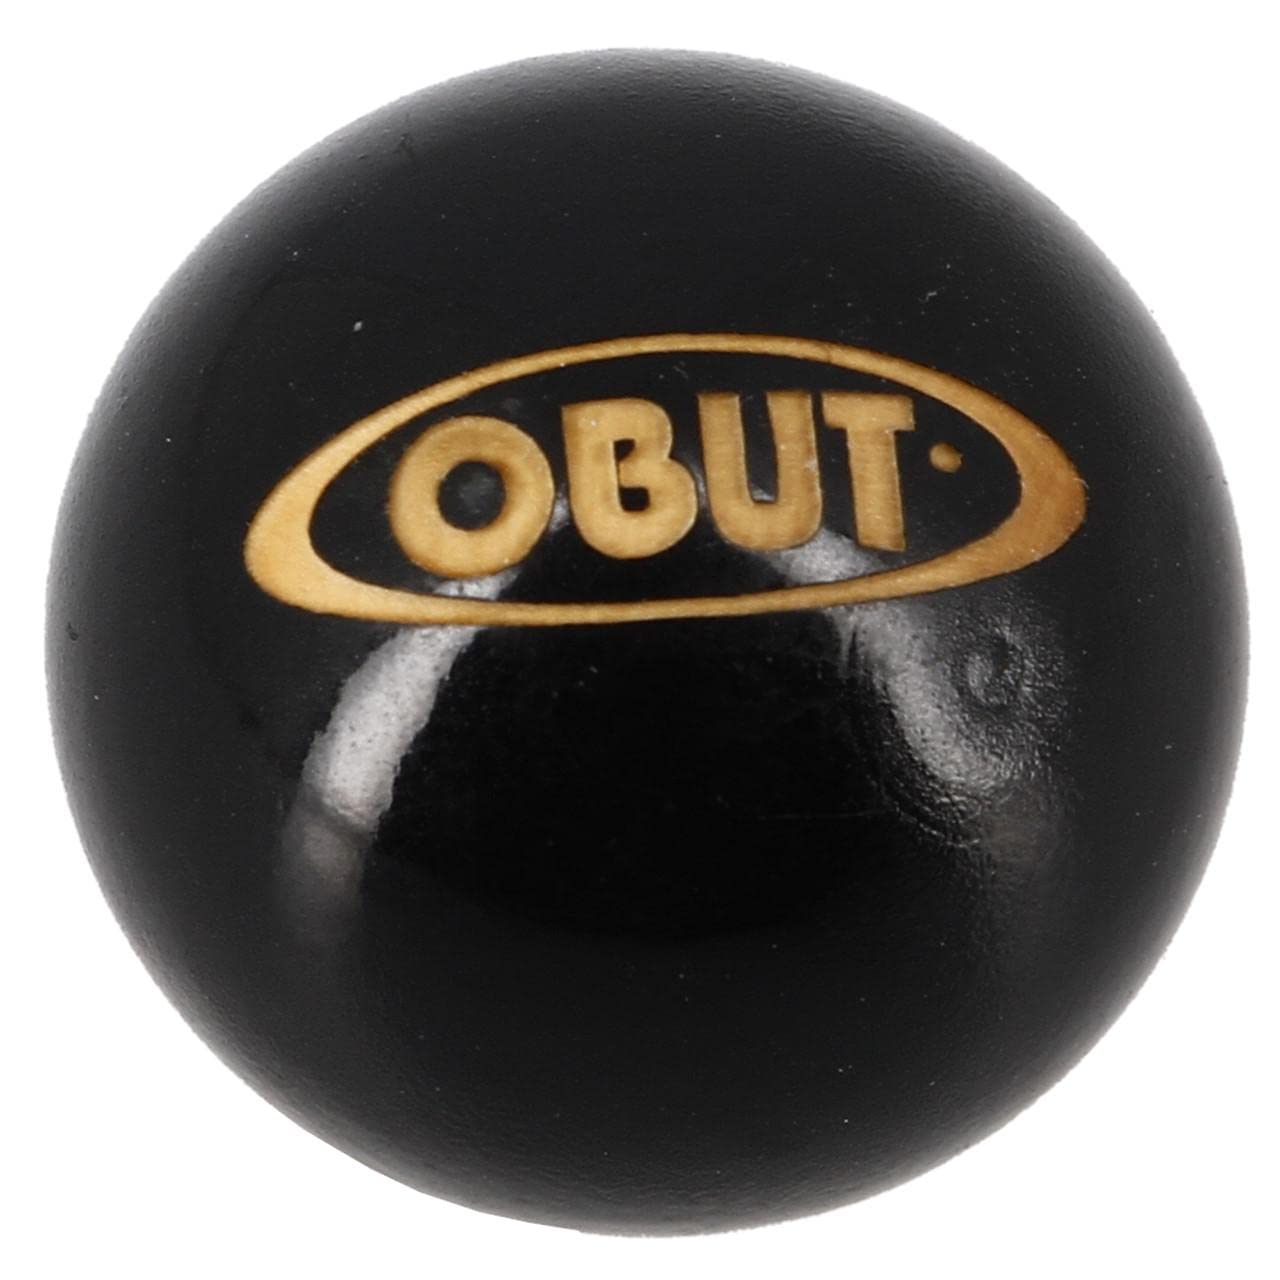 stylé  Obut - But buis Laque Noir - Buts de pétanque - Noir Vernis - Taille Unique sUAmugeQ5 Outlet Shop 